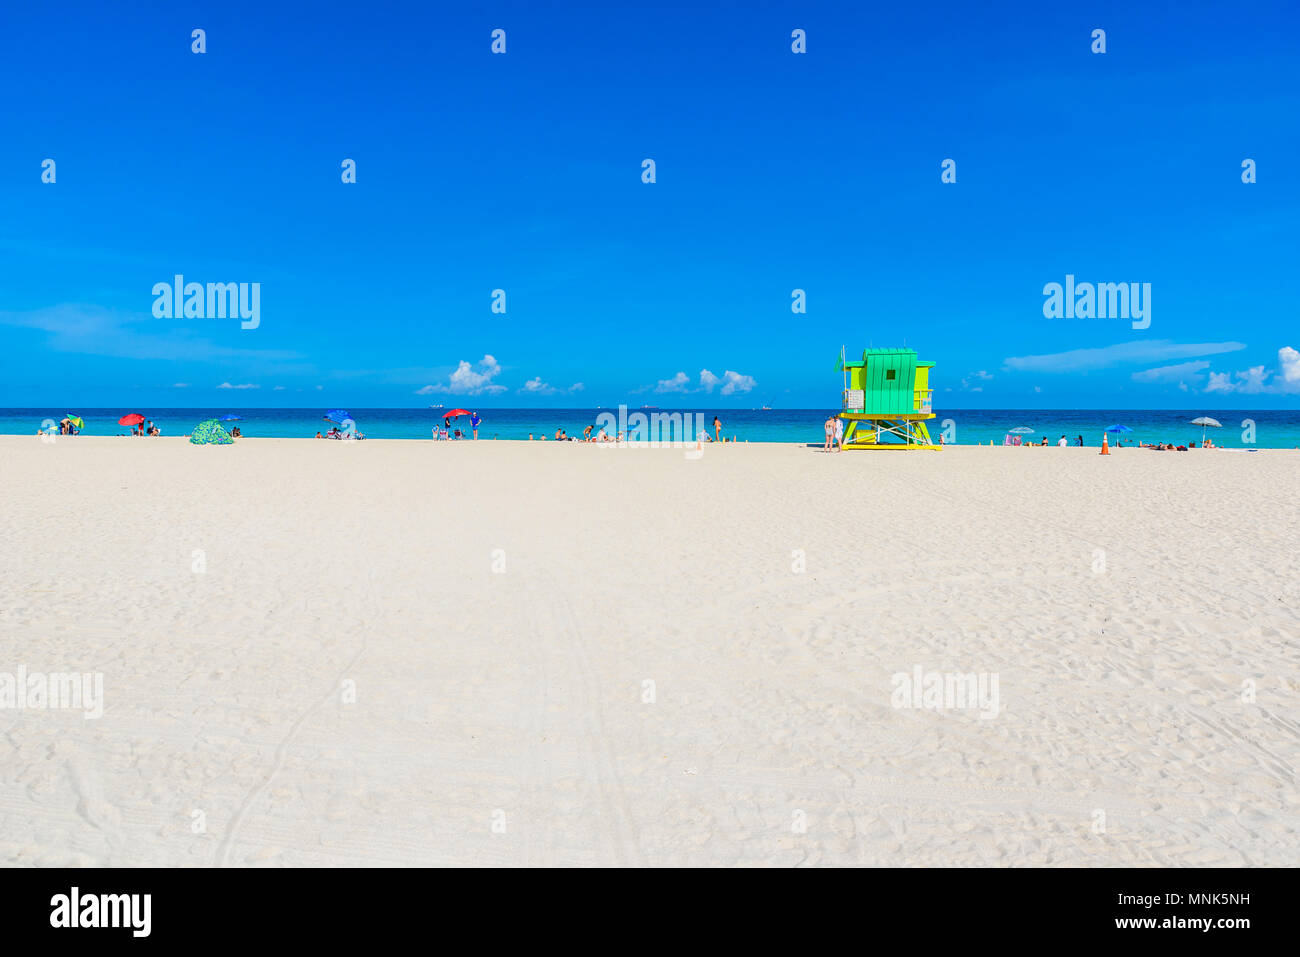 Miami South Beach, lifeguard chambre dans un décor de style Art Déco au jour d'été ensoleillé avec la mer des Caraïbes en arrière-plan, célèbre lieu de voyage Banque D'Images